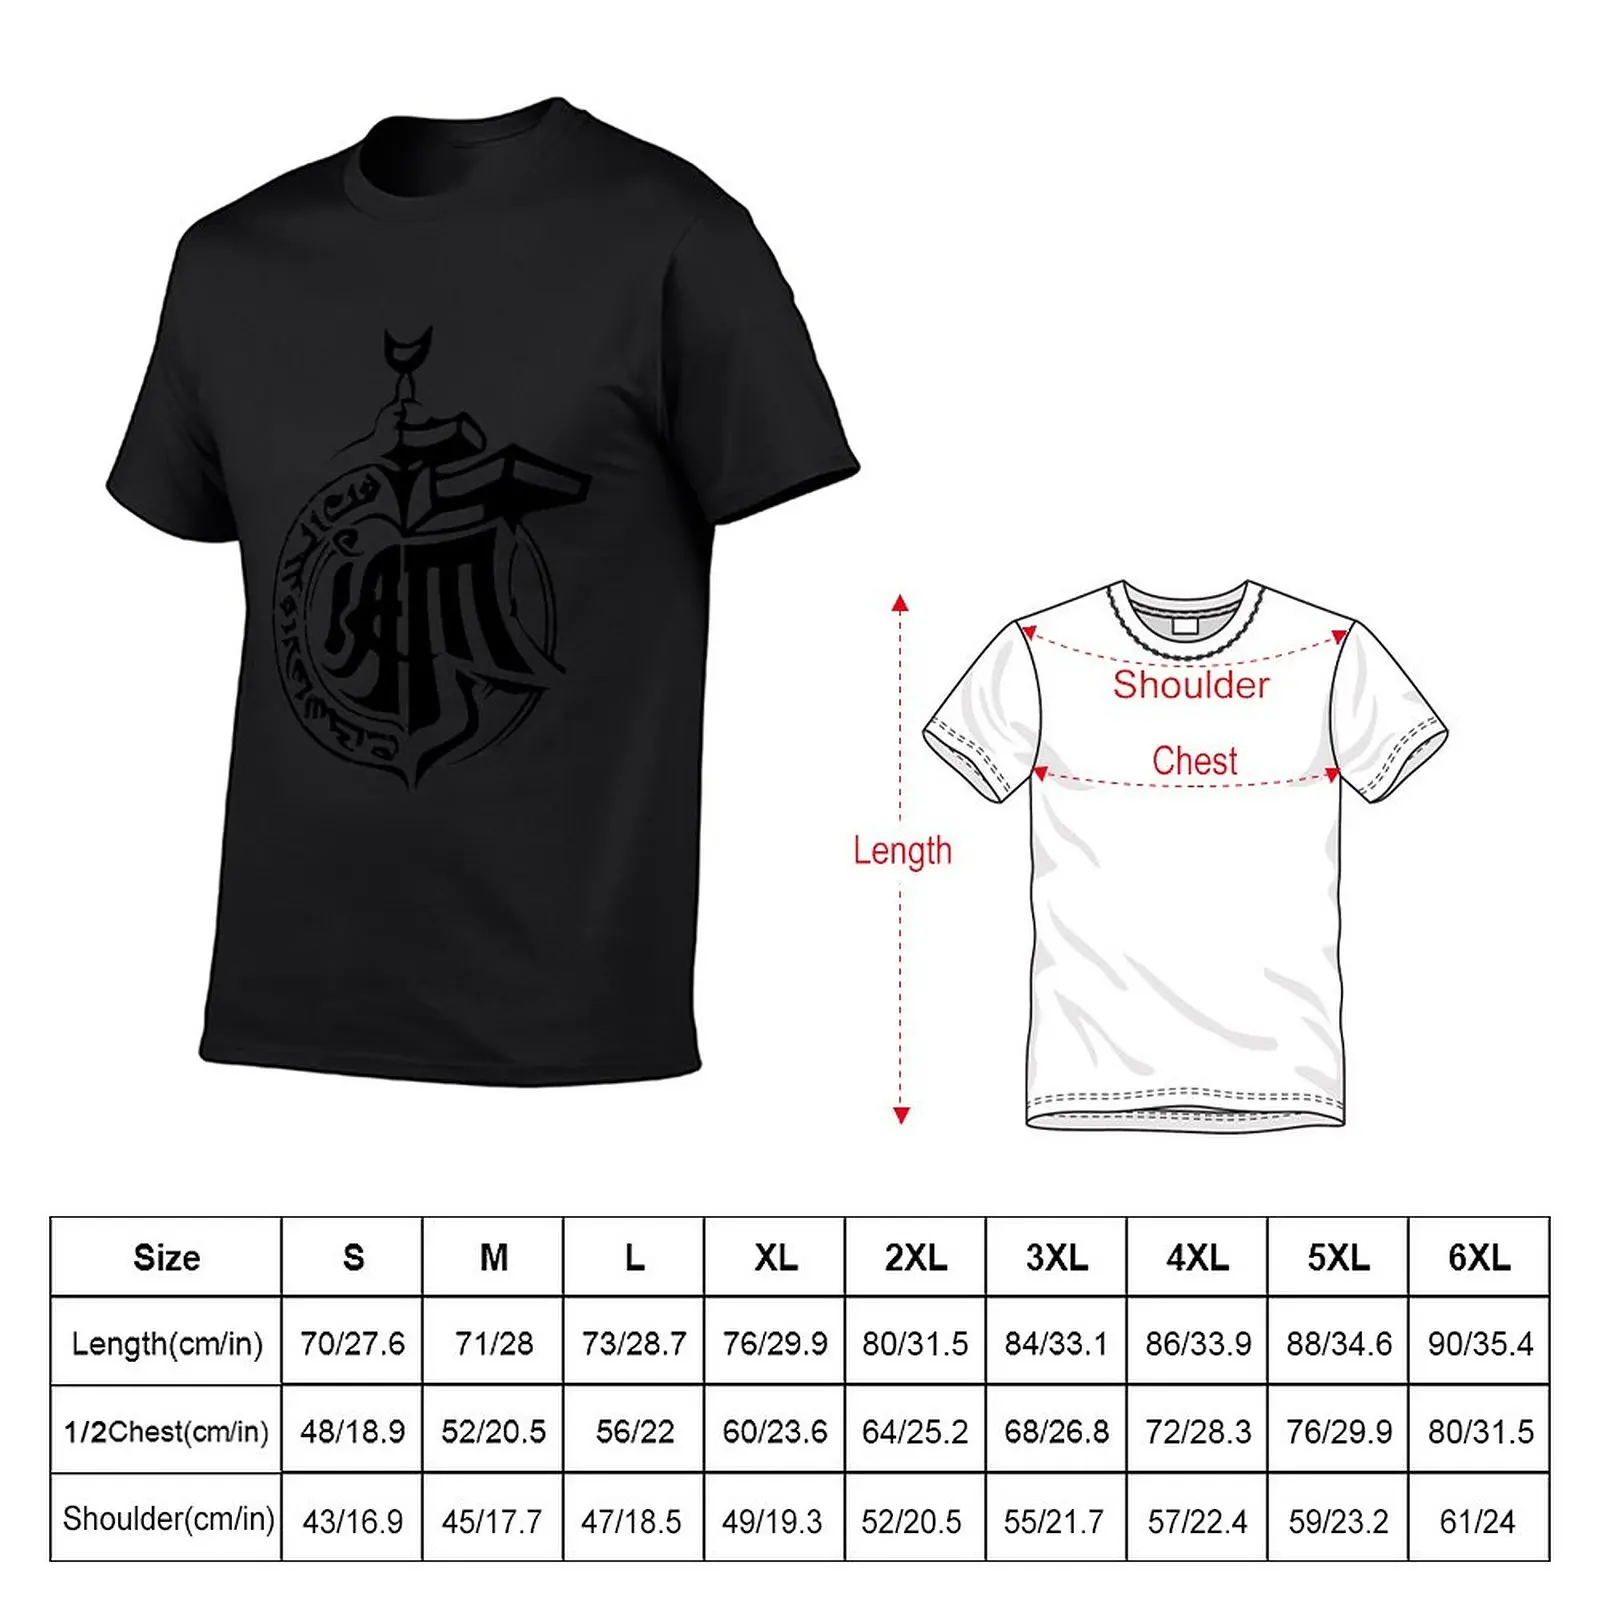 Новая коллекция IAM French Hip Hop Rap Marseille - Saison 5 - Черная футболка, аниме одежда, футболки для мужчин, упаковка Изображение 1